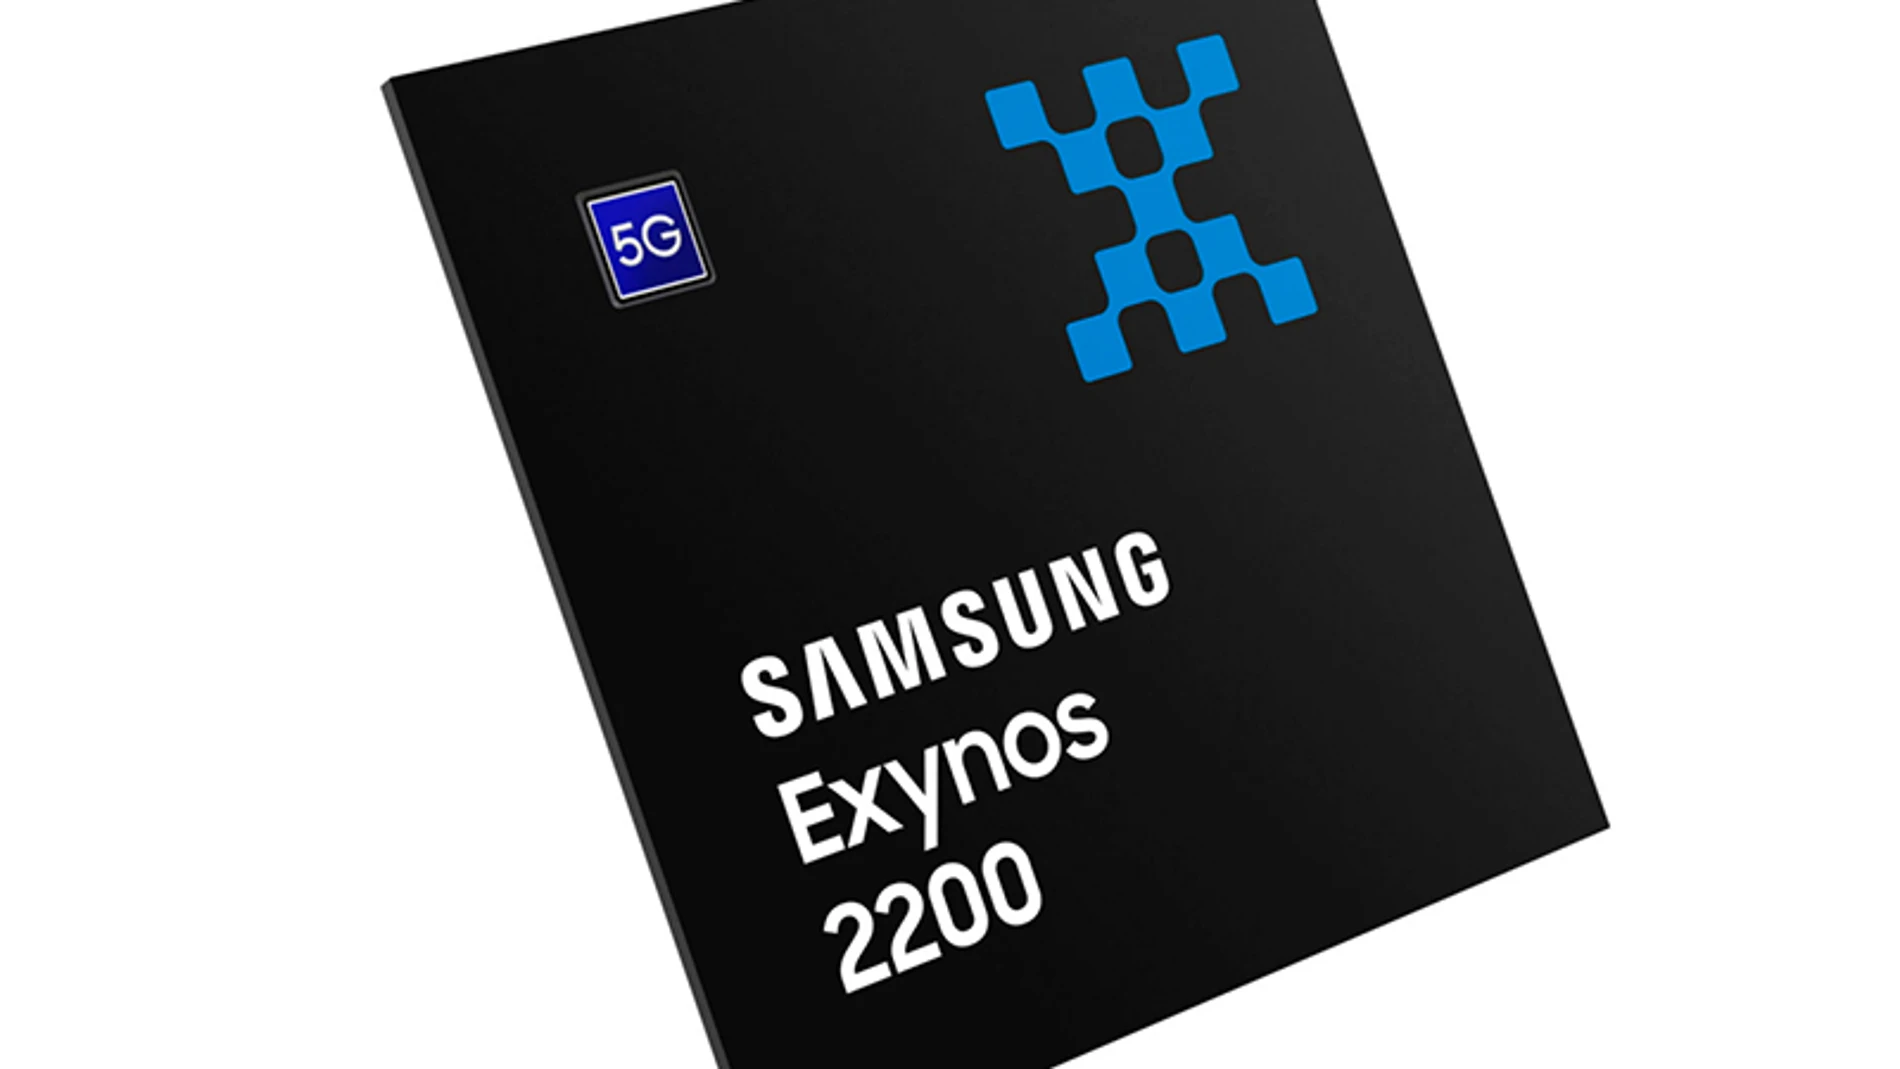 Recreación del SoC Exynos 2200 de Samsung con GPU que emplea la arquitectura RDNA2 vista en PS5 y Xbox Series X/S.